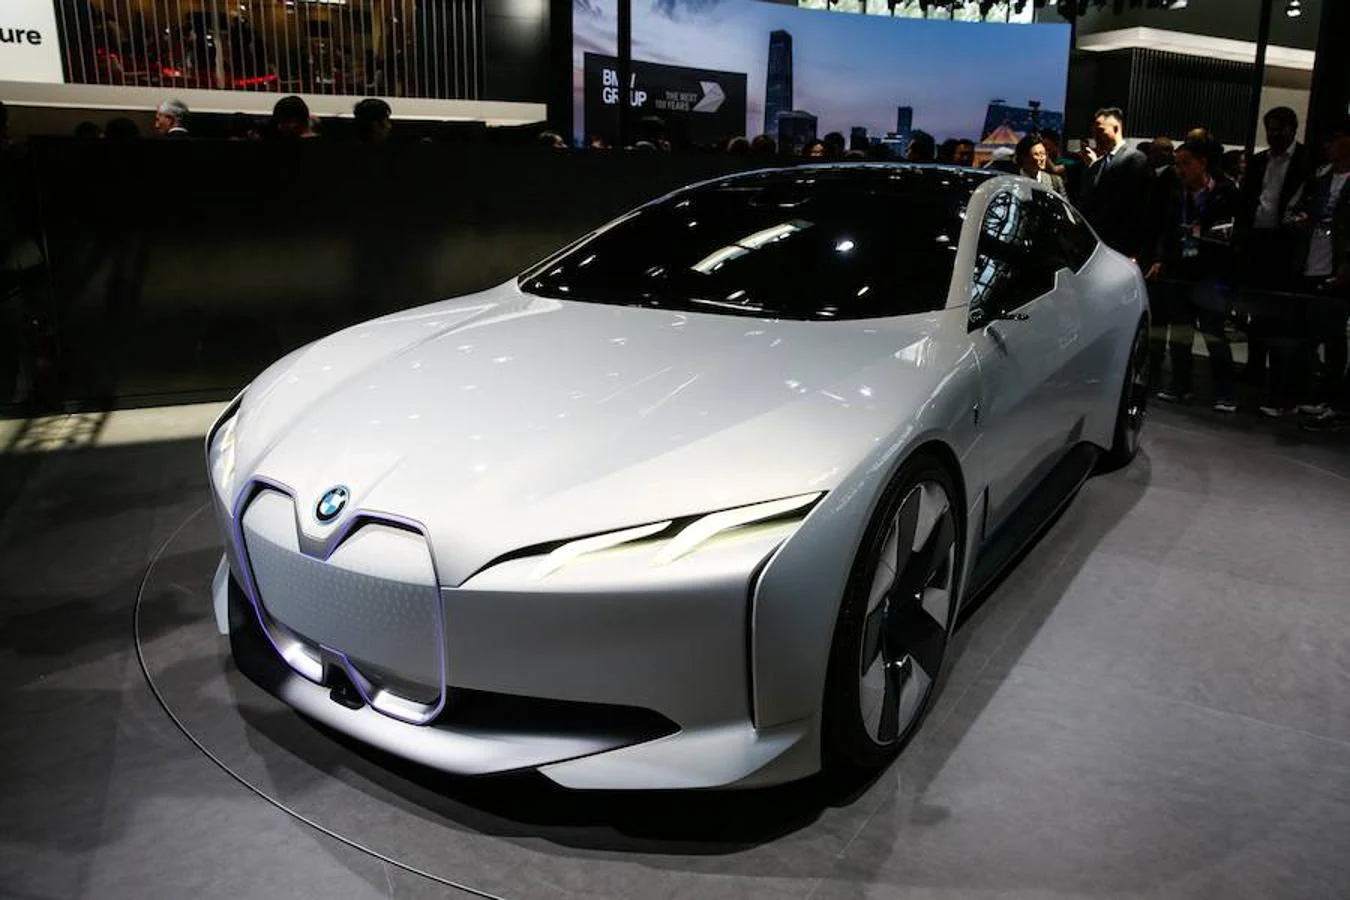 Las grandes marcas como Mercedes, BMW o VW también están presentes en Pekín.